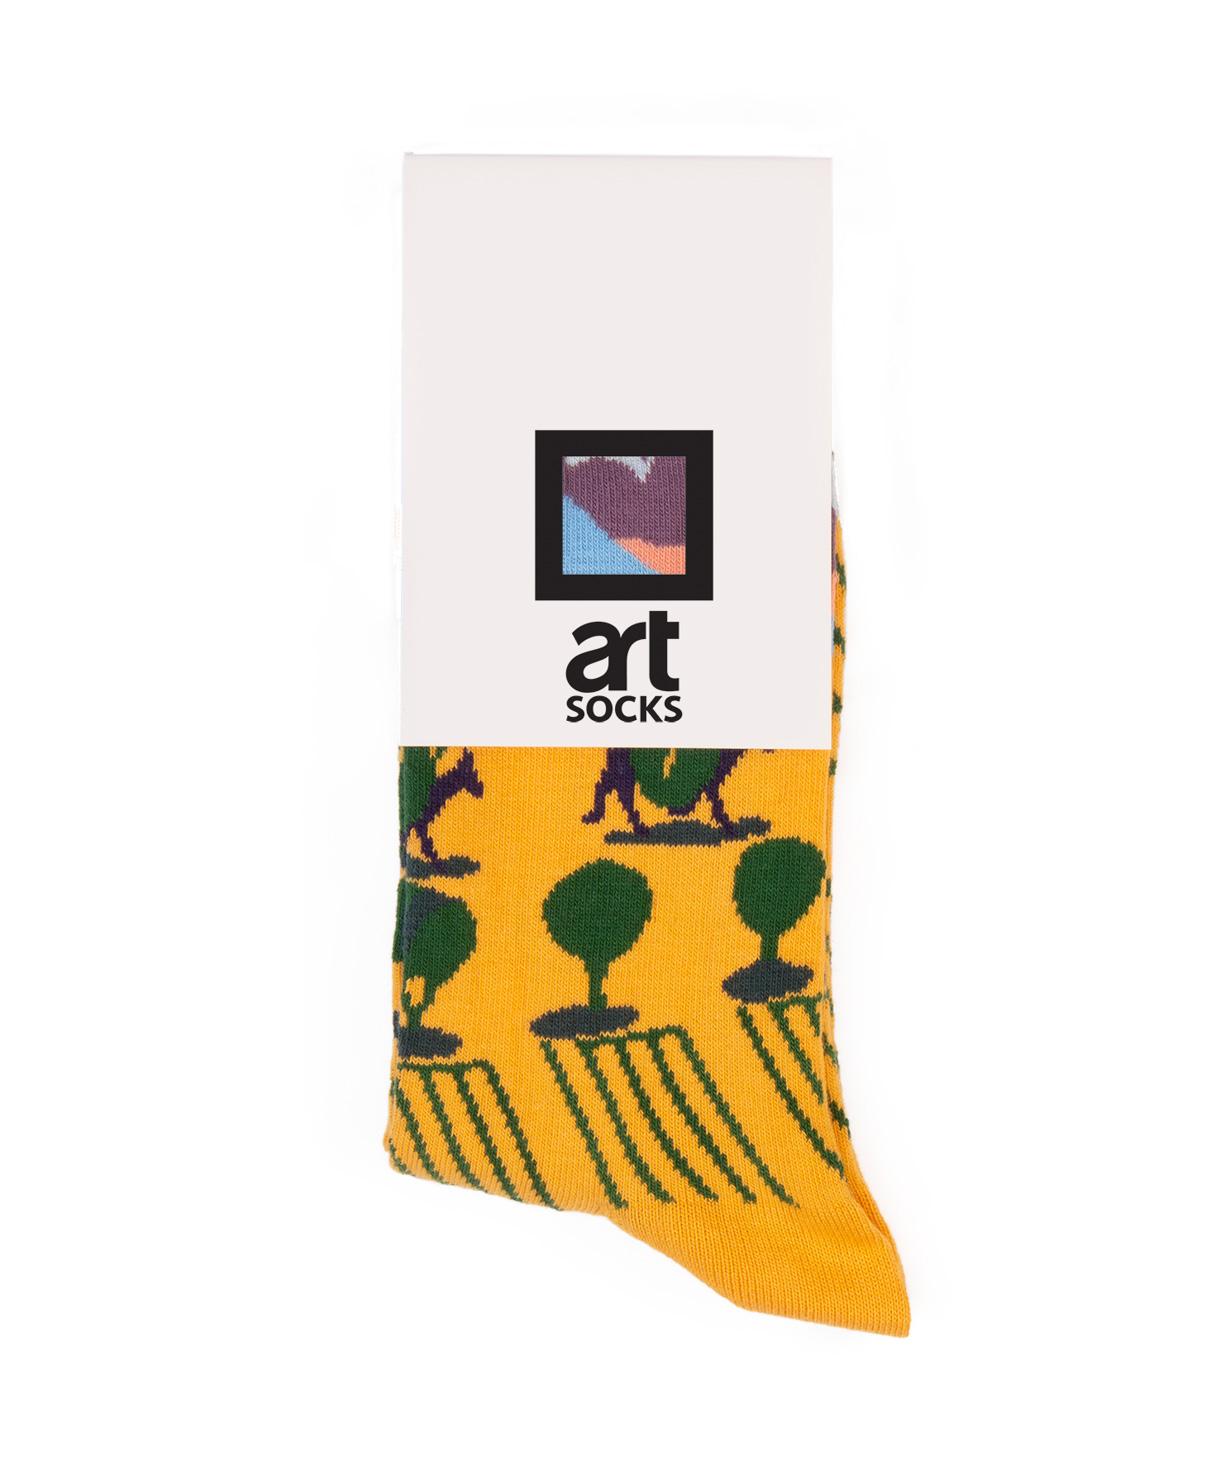 Գուլպաներ «Art socks» «Պեյզաժ»